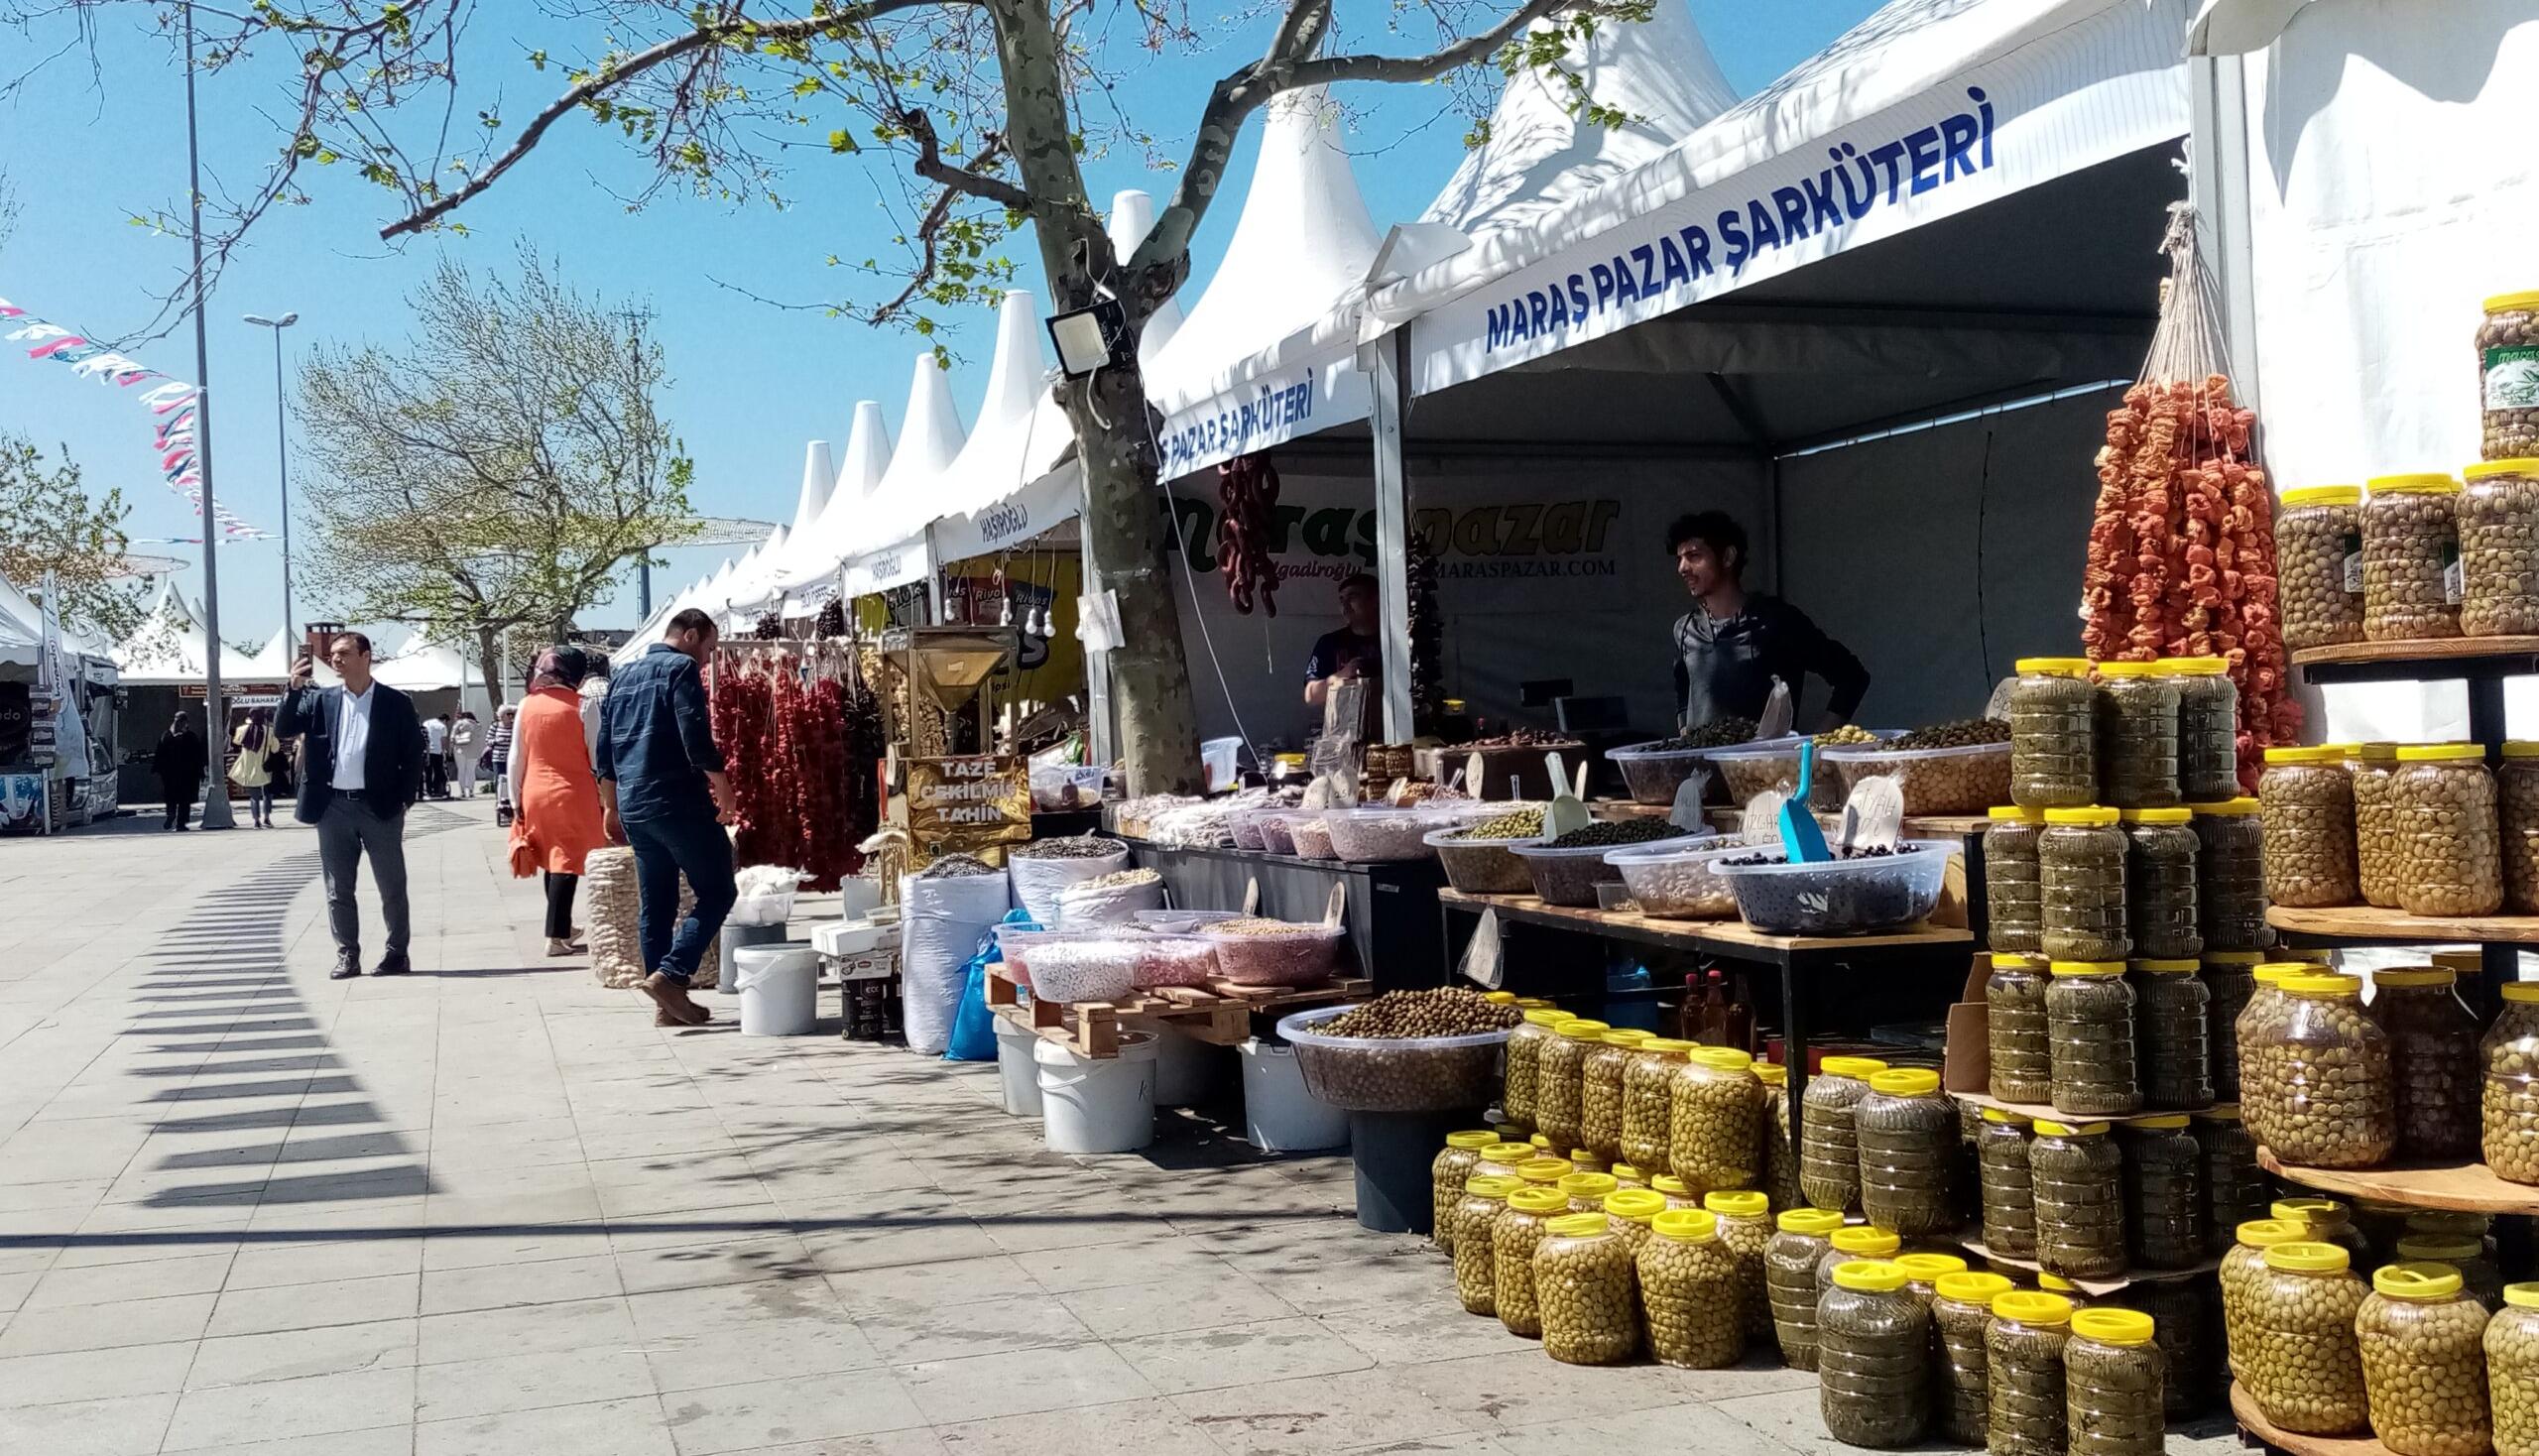 İstanbul’daki Maraş dayanışma pazarı ilgisizlikten şikayetçi